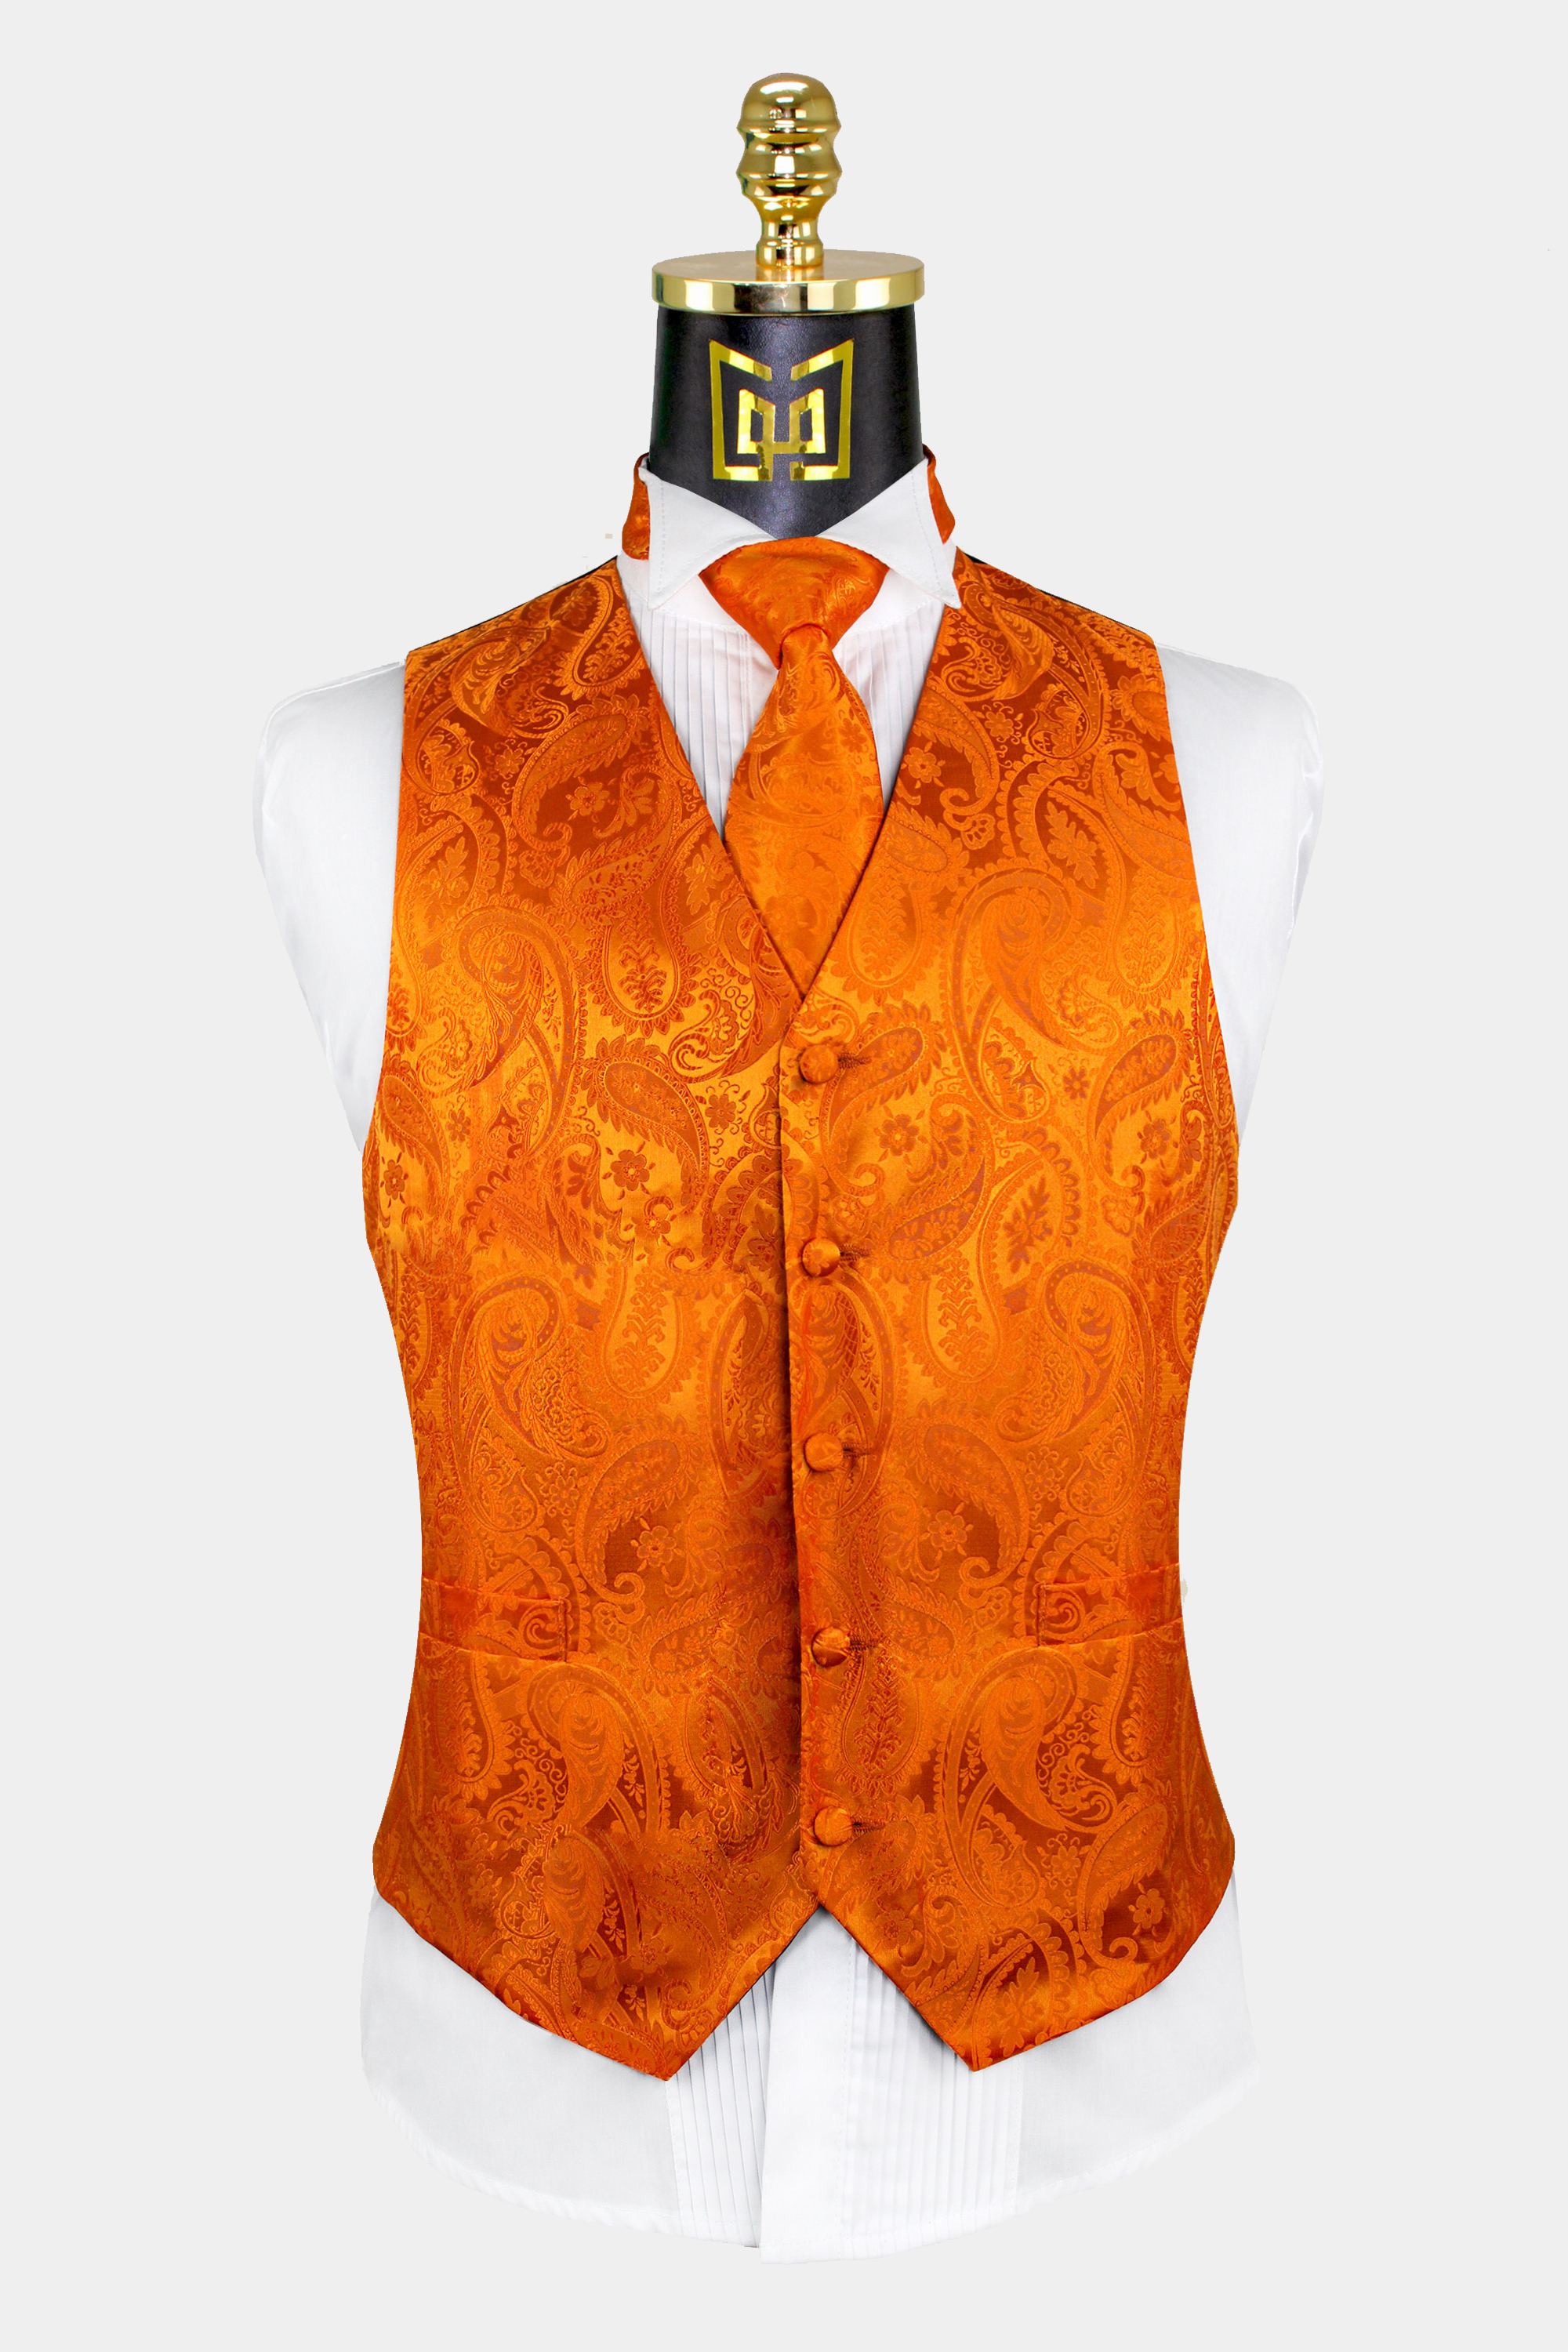 Mens-Orange-Paisley-Vest-and-Tie-Set-Groom-Wedding-Tuxedo-Vest-from-Gentlemansguru.com_